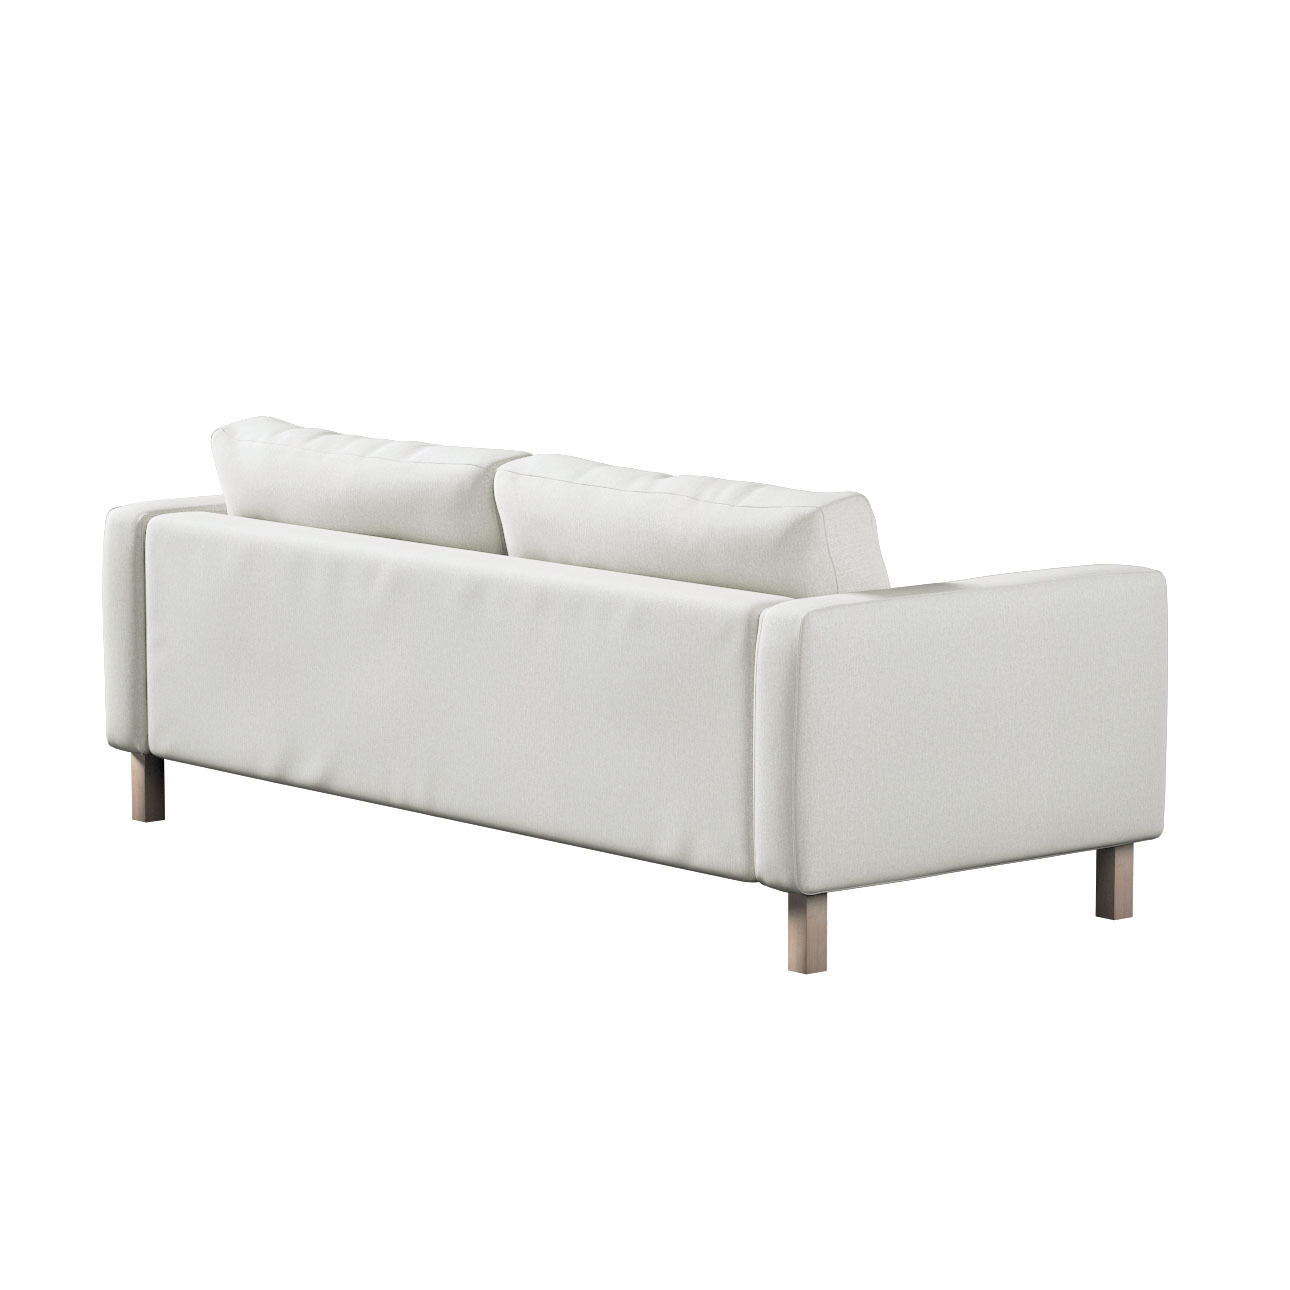 Bezug für Karlstad 3-Sitzer Sofa nicht ausklappbar, kurz, creme, Bezug für günstig online kaufen